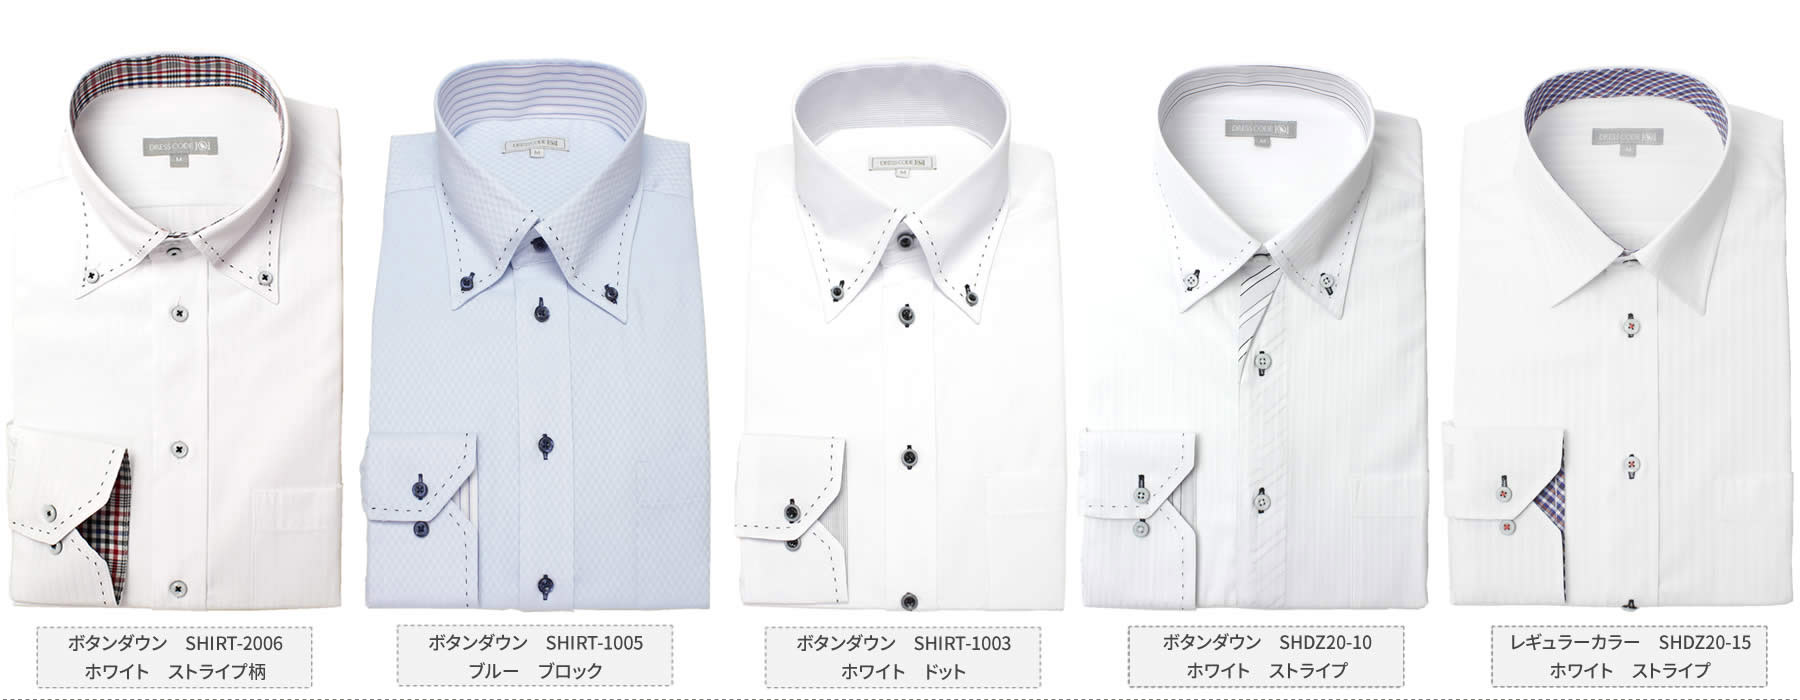 【楽天市場】ワイシャツ 長袖 5枚 セット 送料無料 [実店舗にないオリジナルデザイン] ワイシャツ 長袖 形態安定生地 メンズ Yシャツ